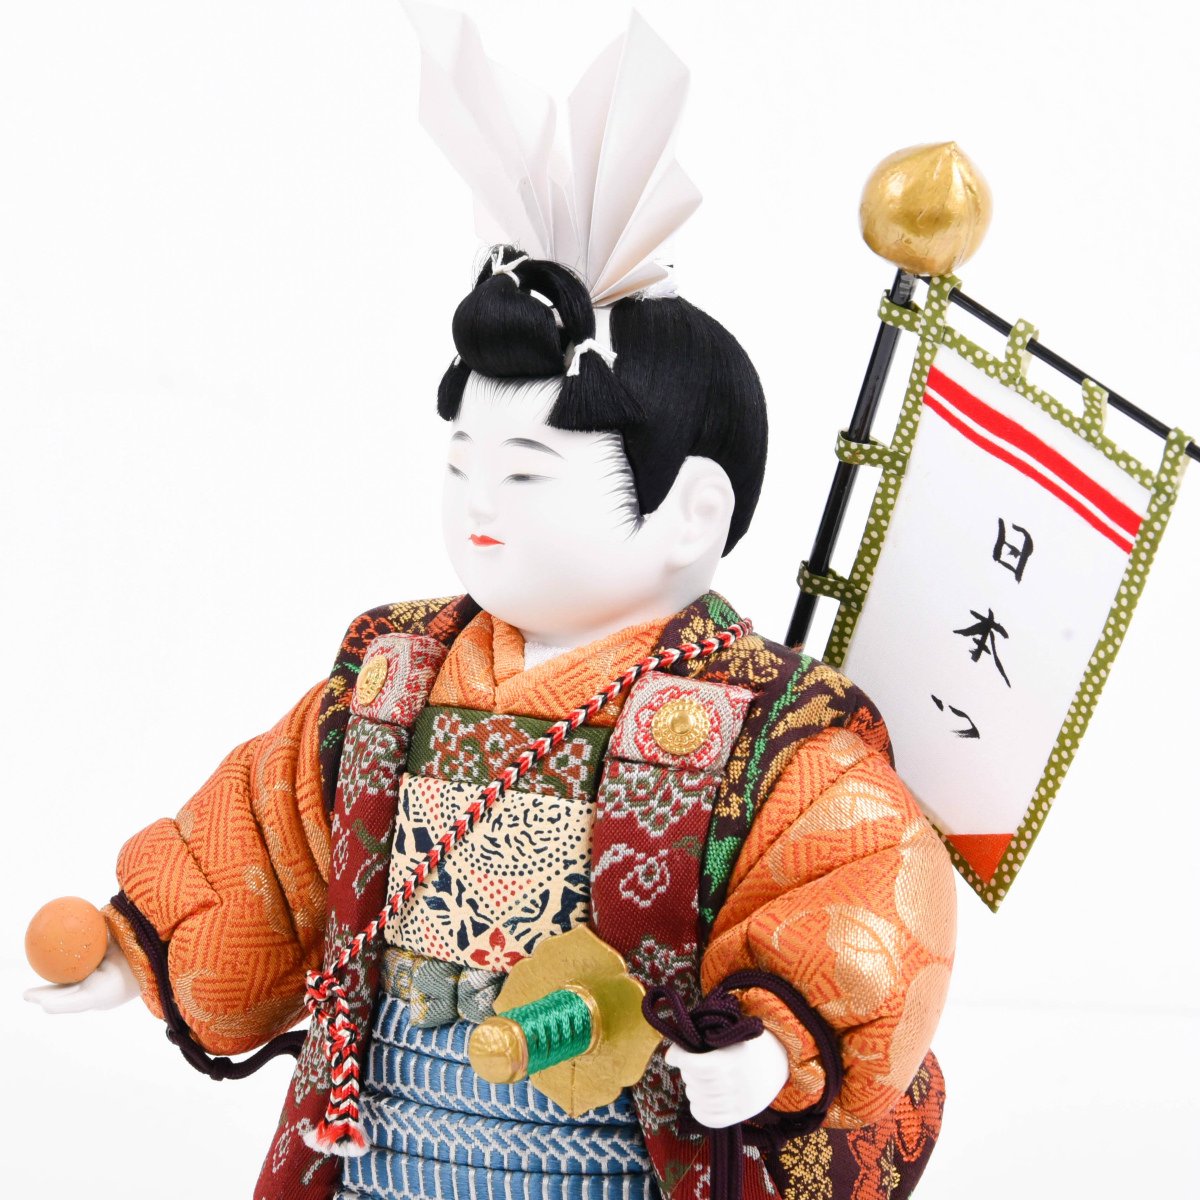 五月人形 桃太郎 原米州 無形文化財 日本人形-